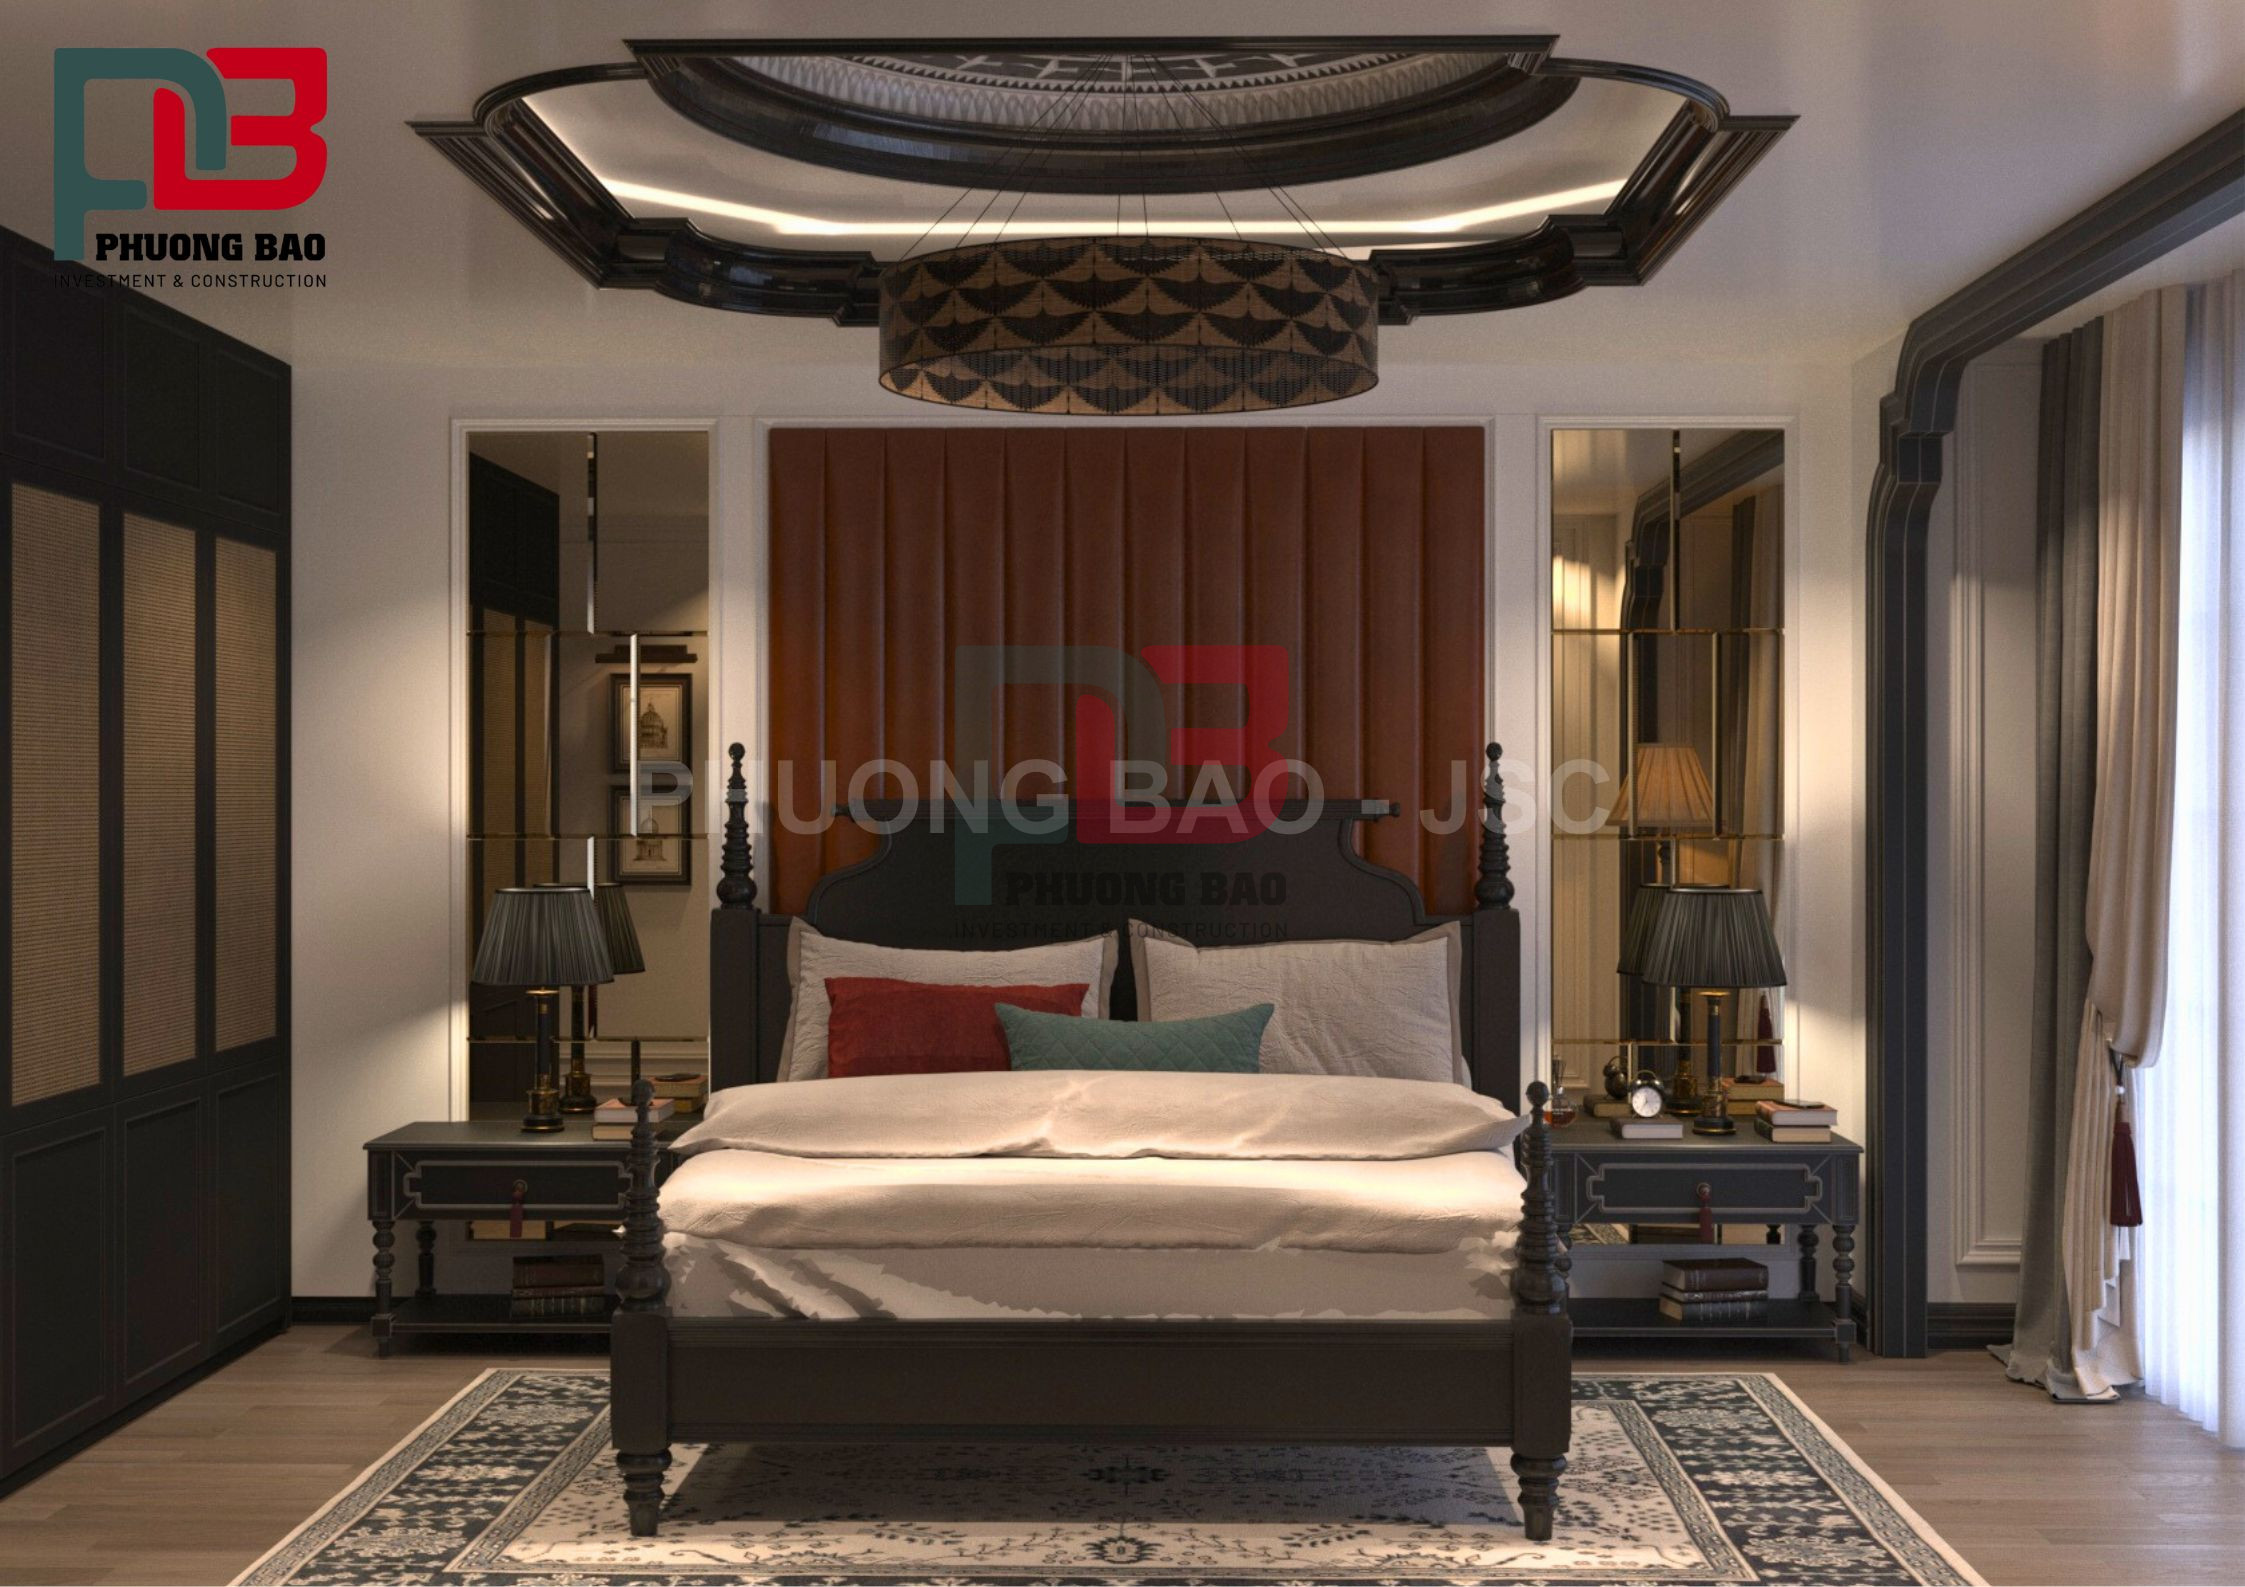 Thiết phòng ngủ theo phong cách Indochine